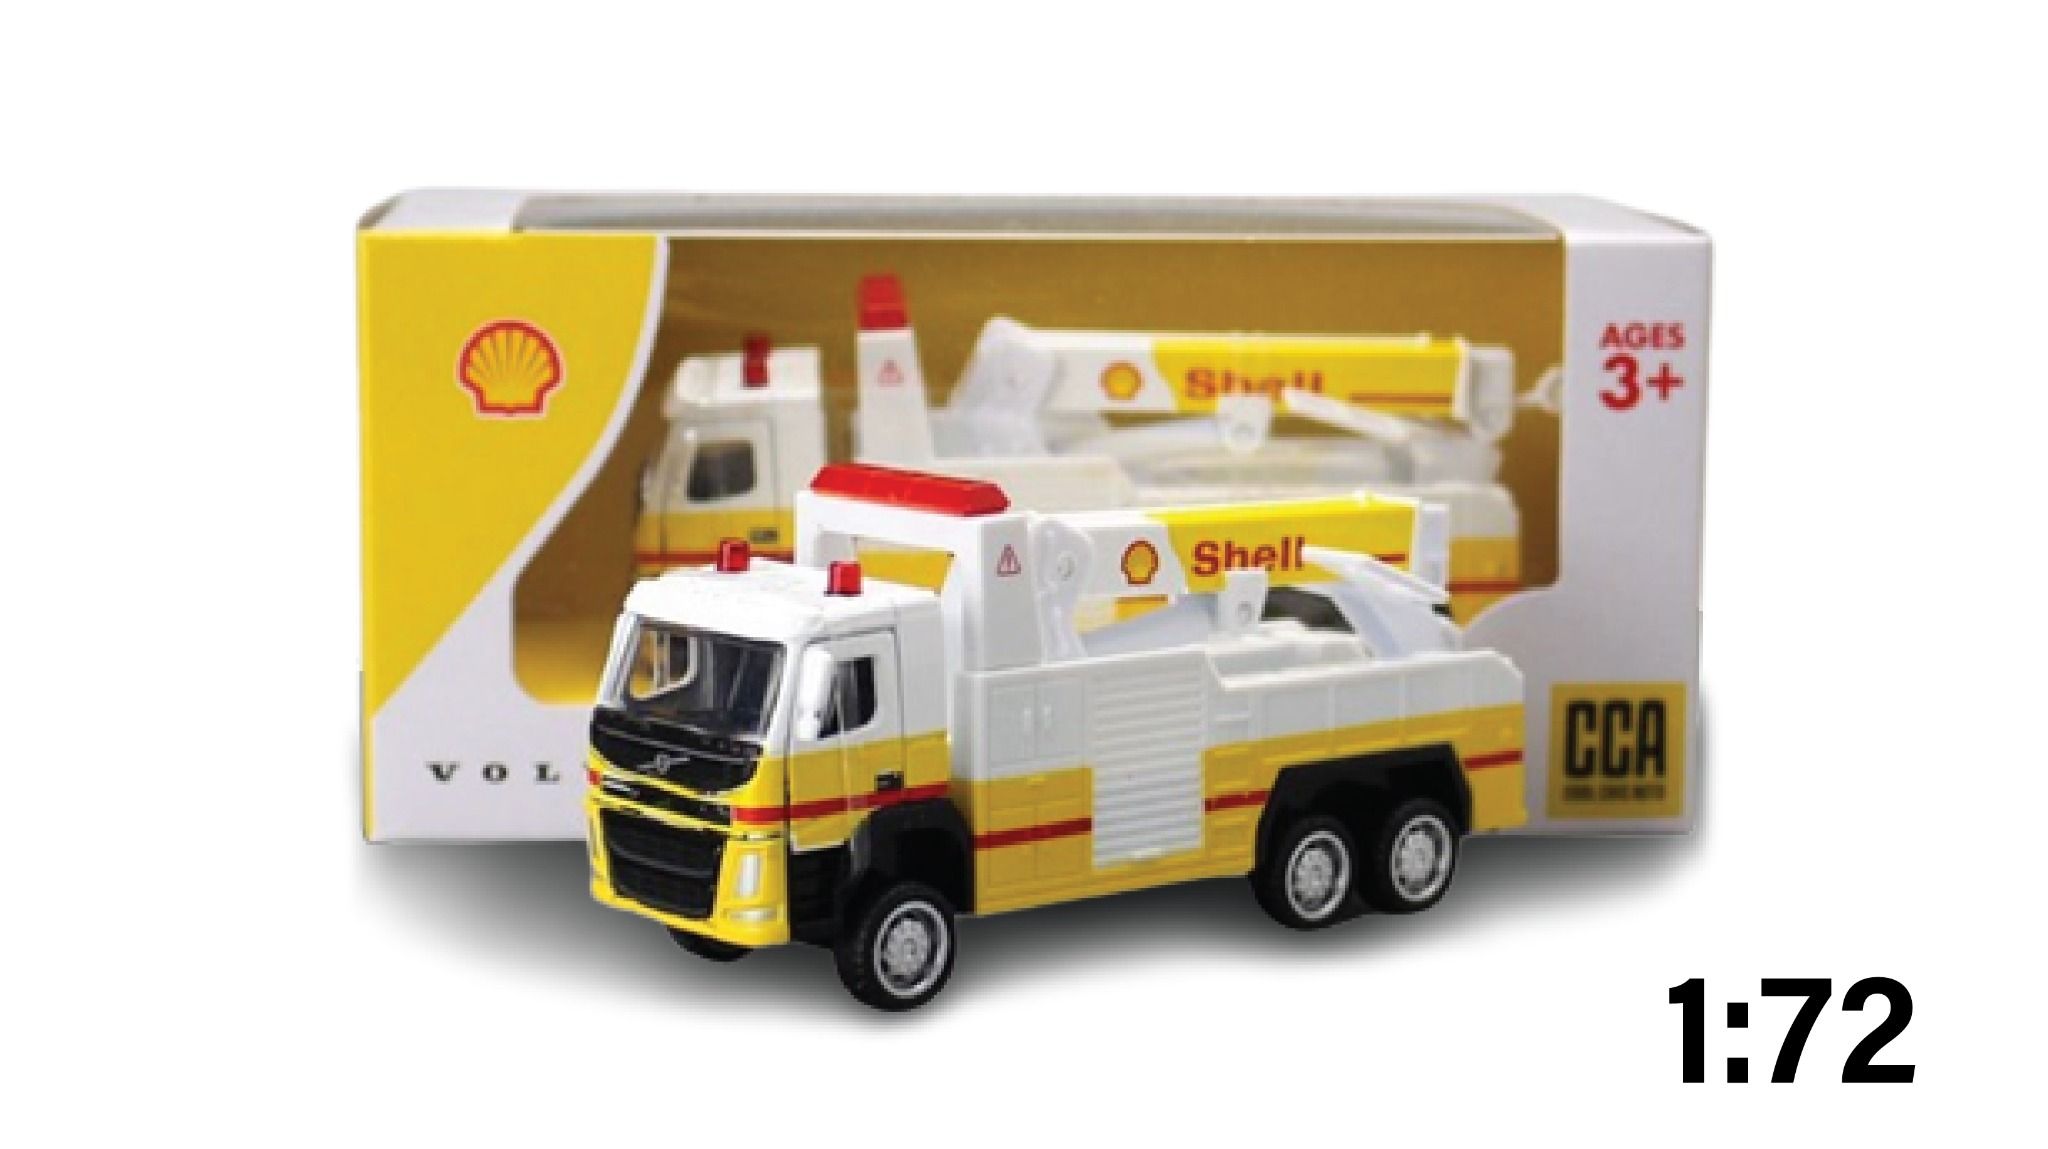  Mô hình xe cẩu cứu hộ Shell Volvo tỉ lệ 1:72 CCA 8188 